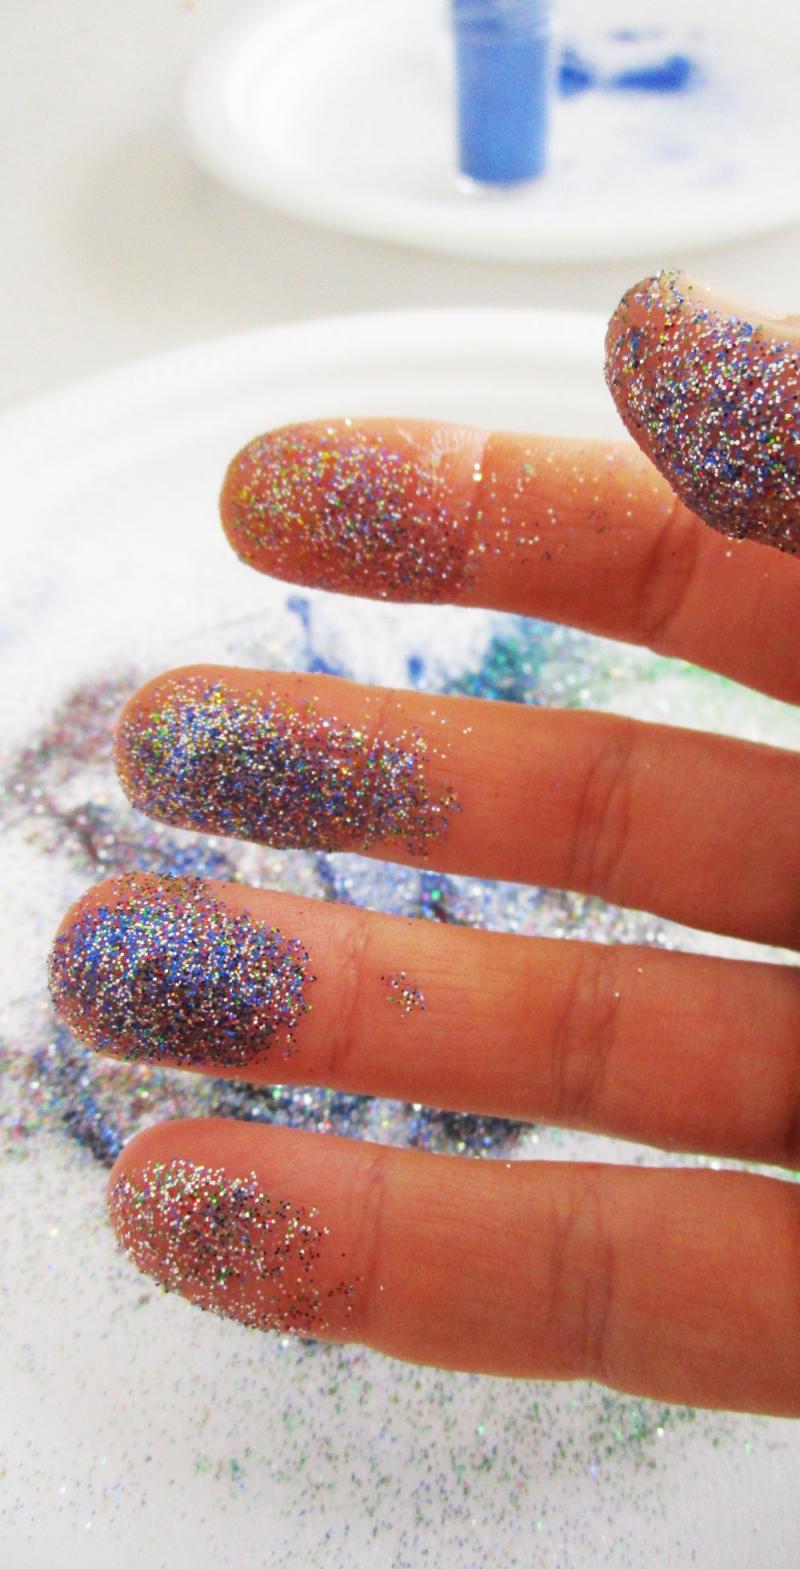 Glitter-covered fingers